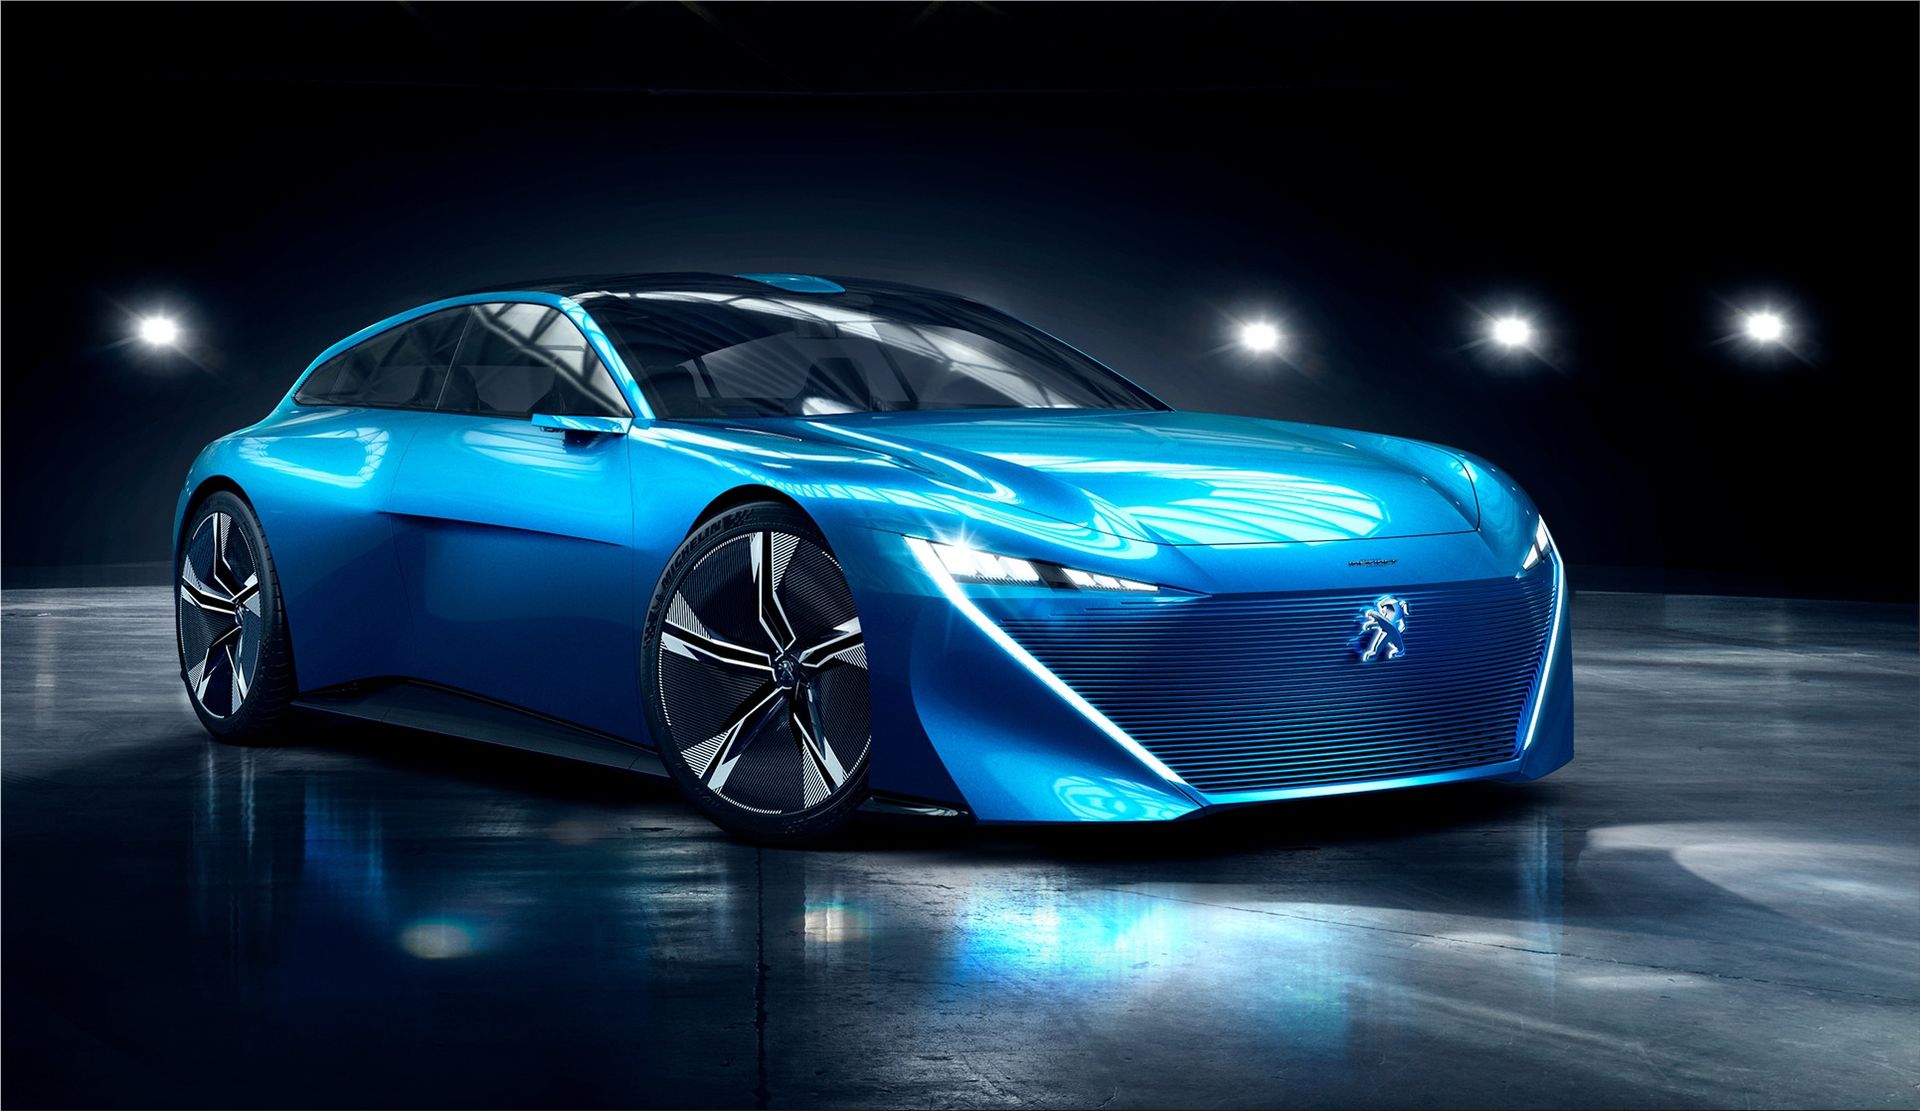 Exalt 4 Stück Onyx Peugeot Concept Car HR1 Fractal 